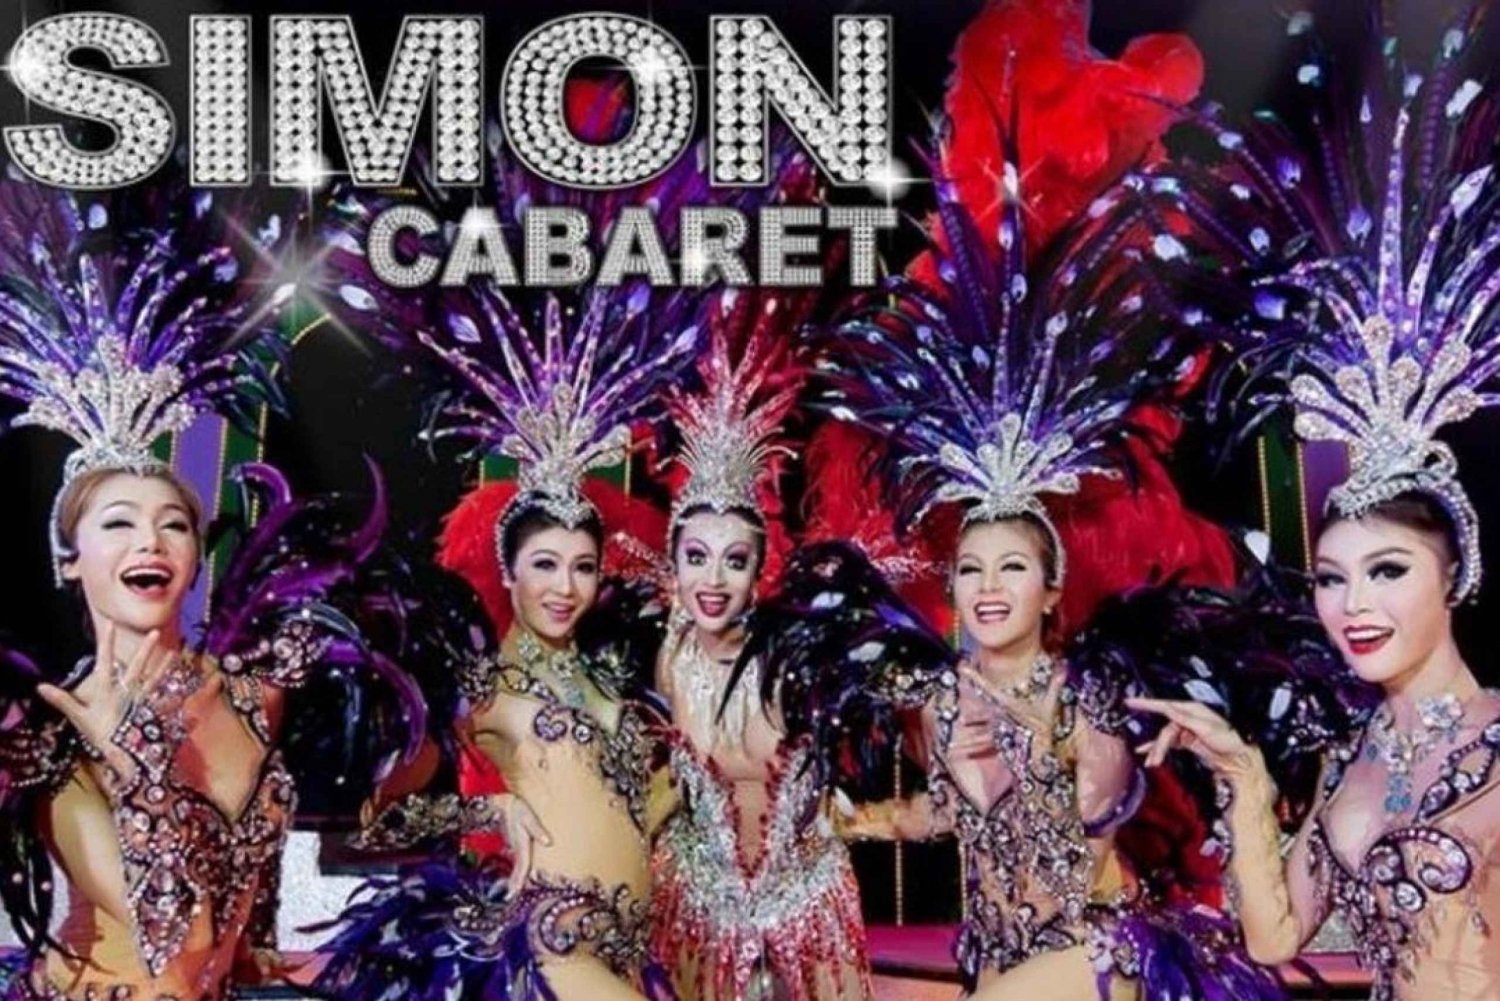 Phuket: Simon Cabaret Show Admission Ticket With Transport